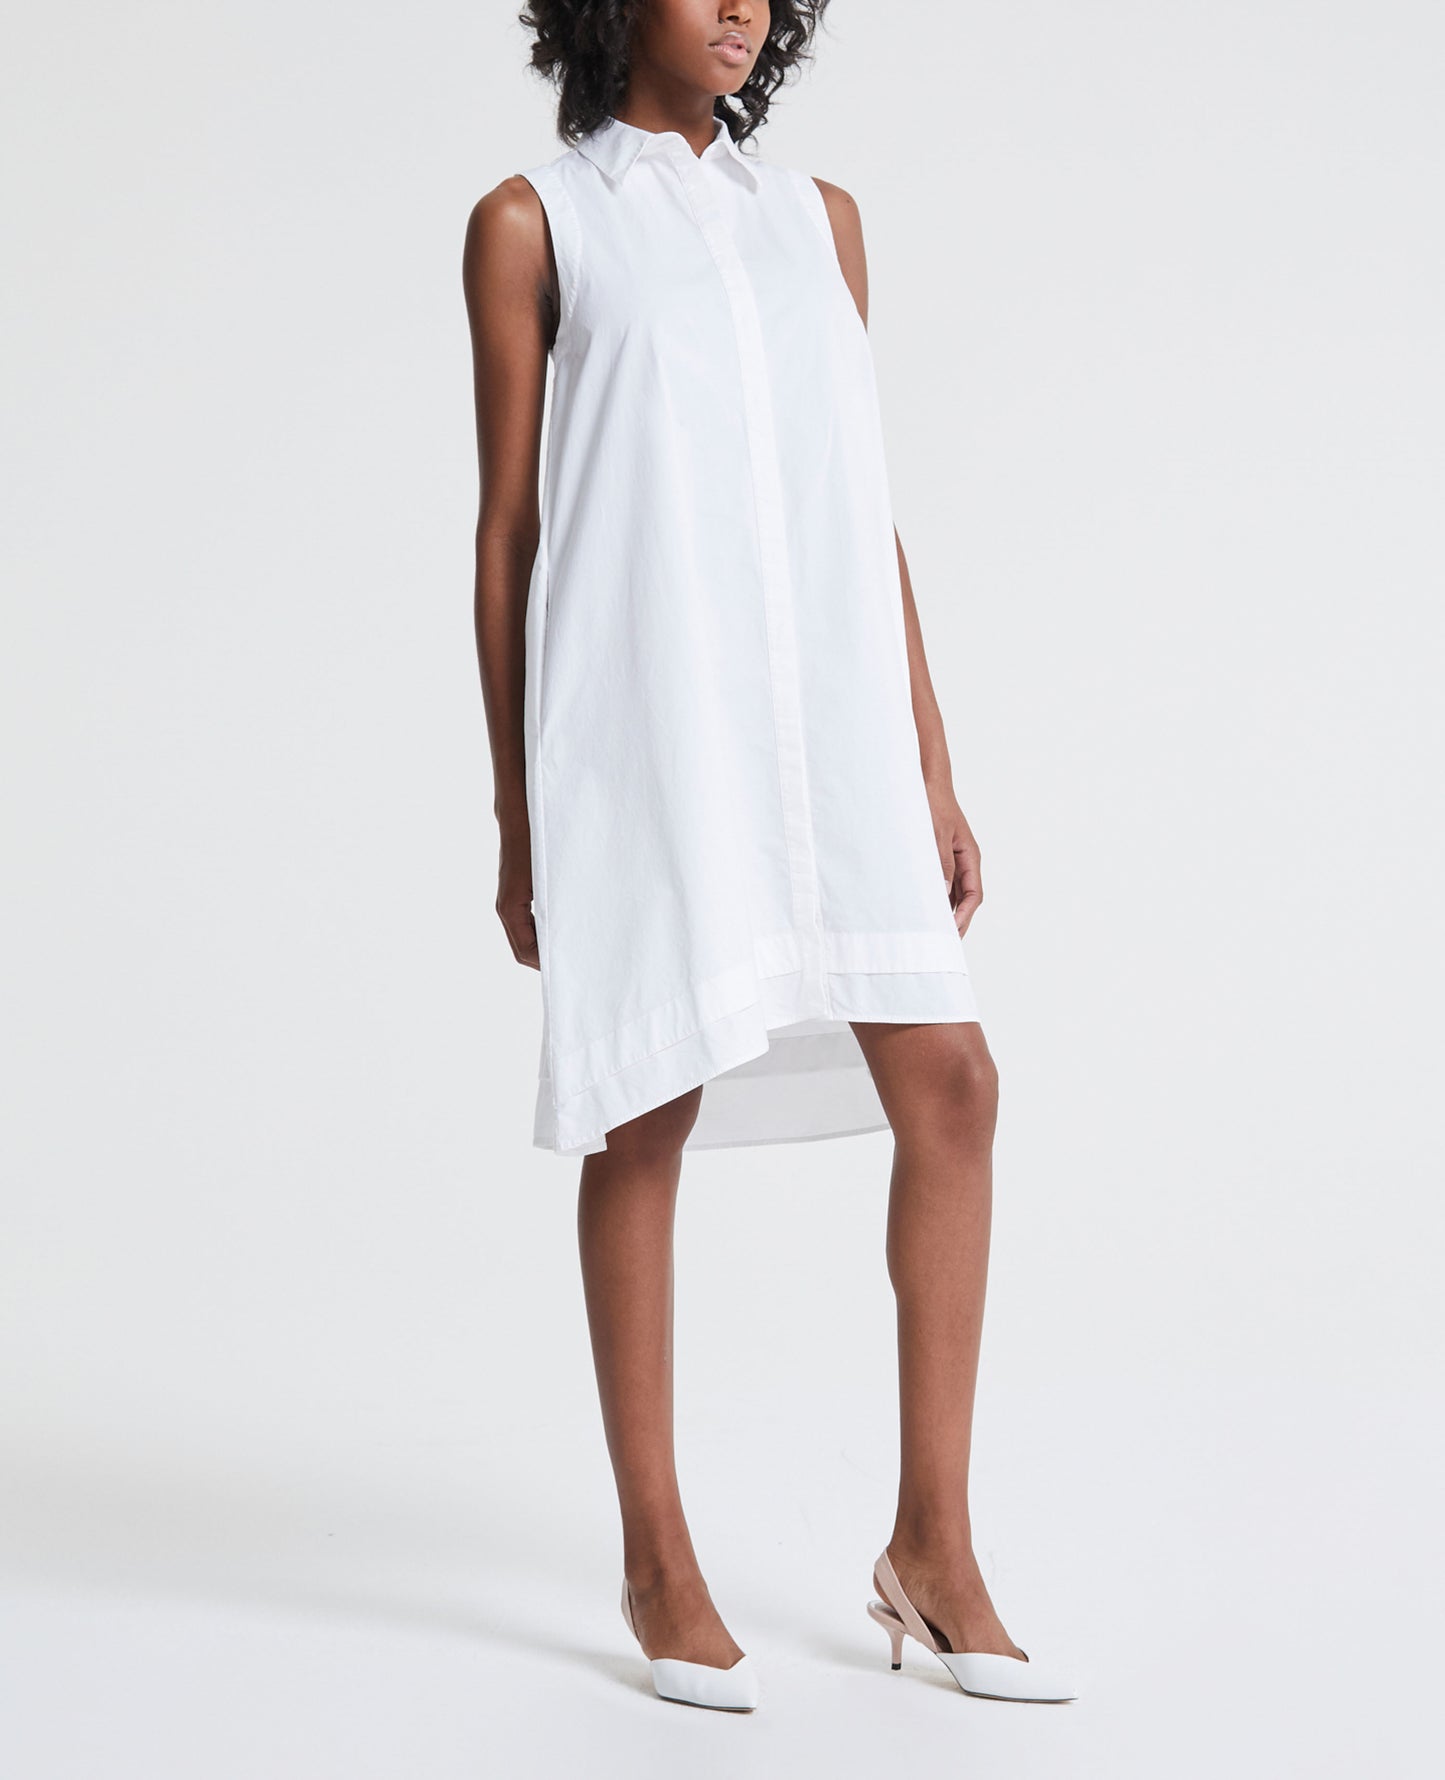 Clover Dress True White Sleeveless Shift Dress Women Onepiece Photo 2